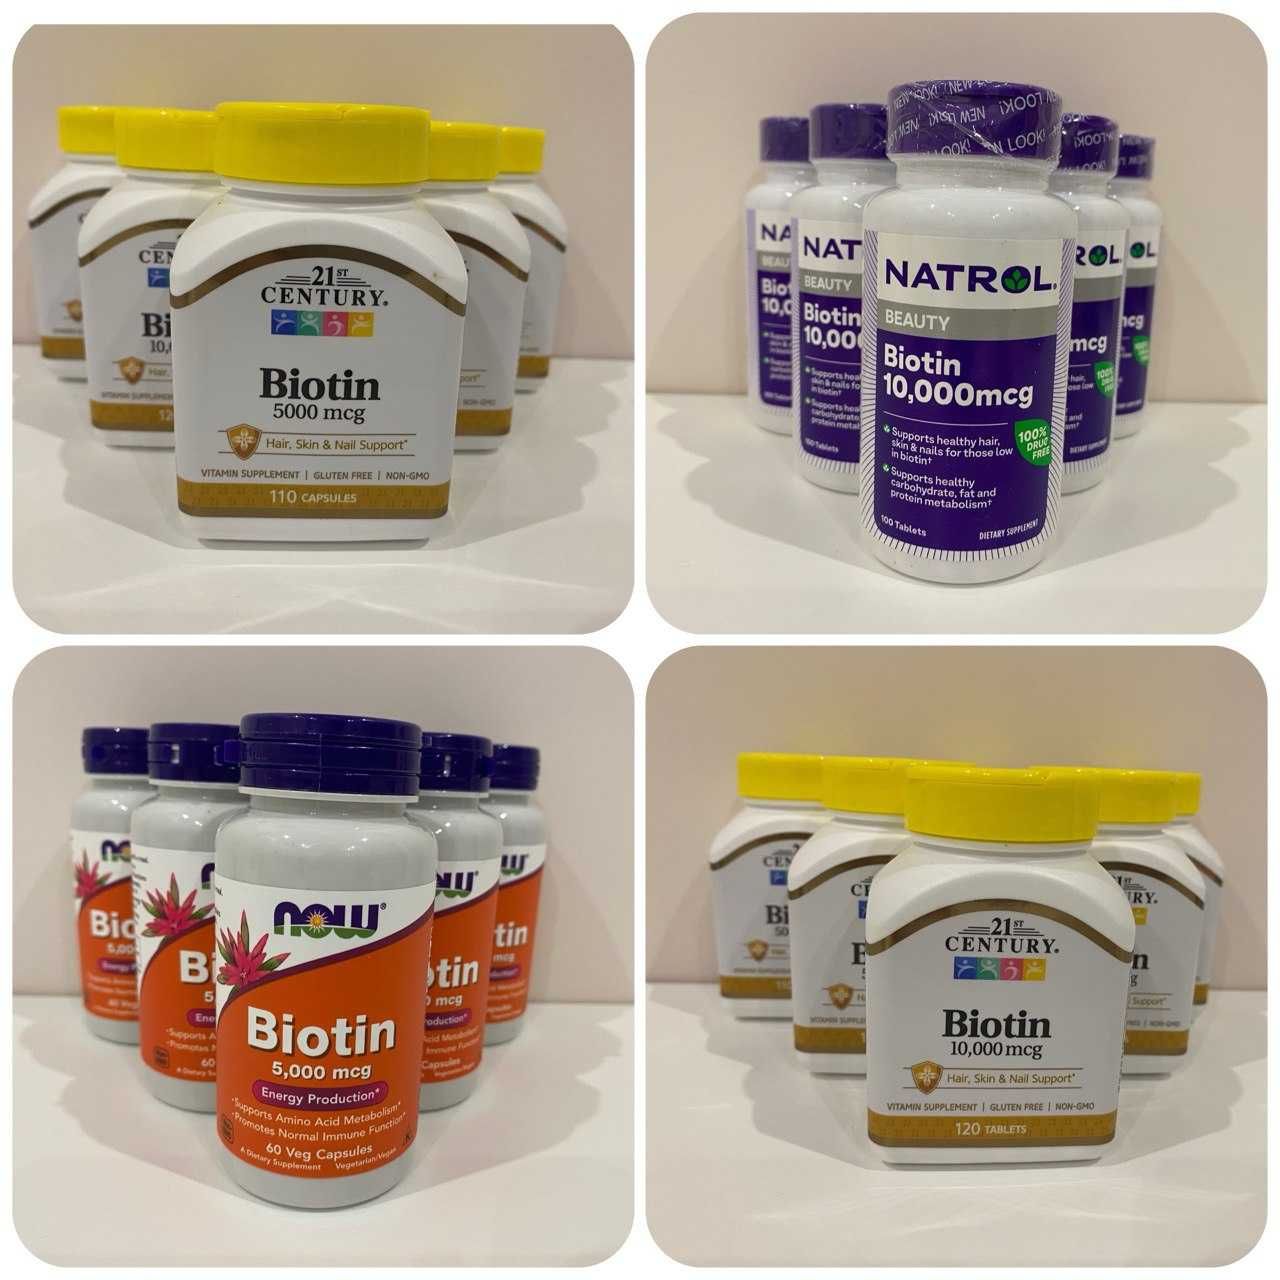 Біотин Now foods,  21st Century, Natrol биотин